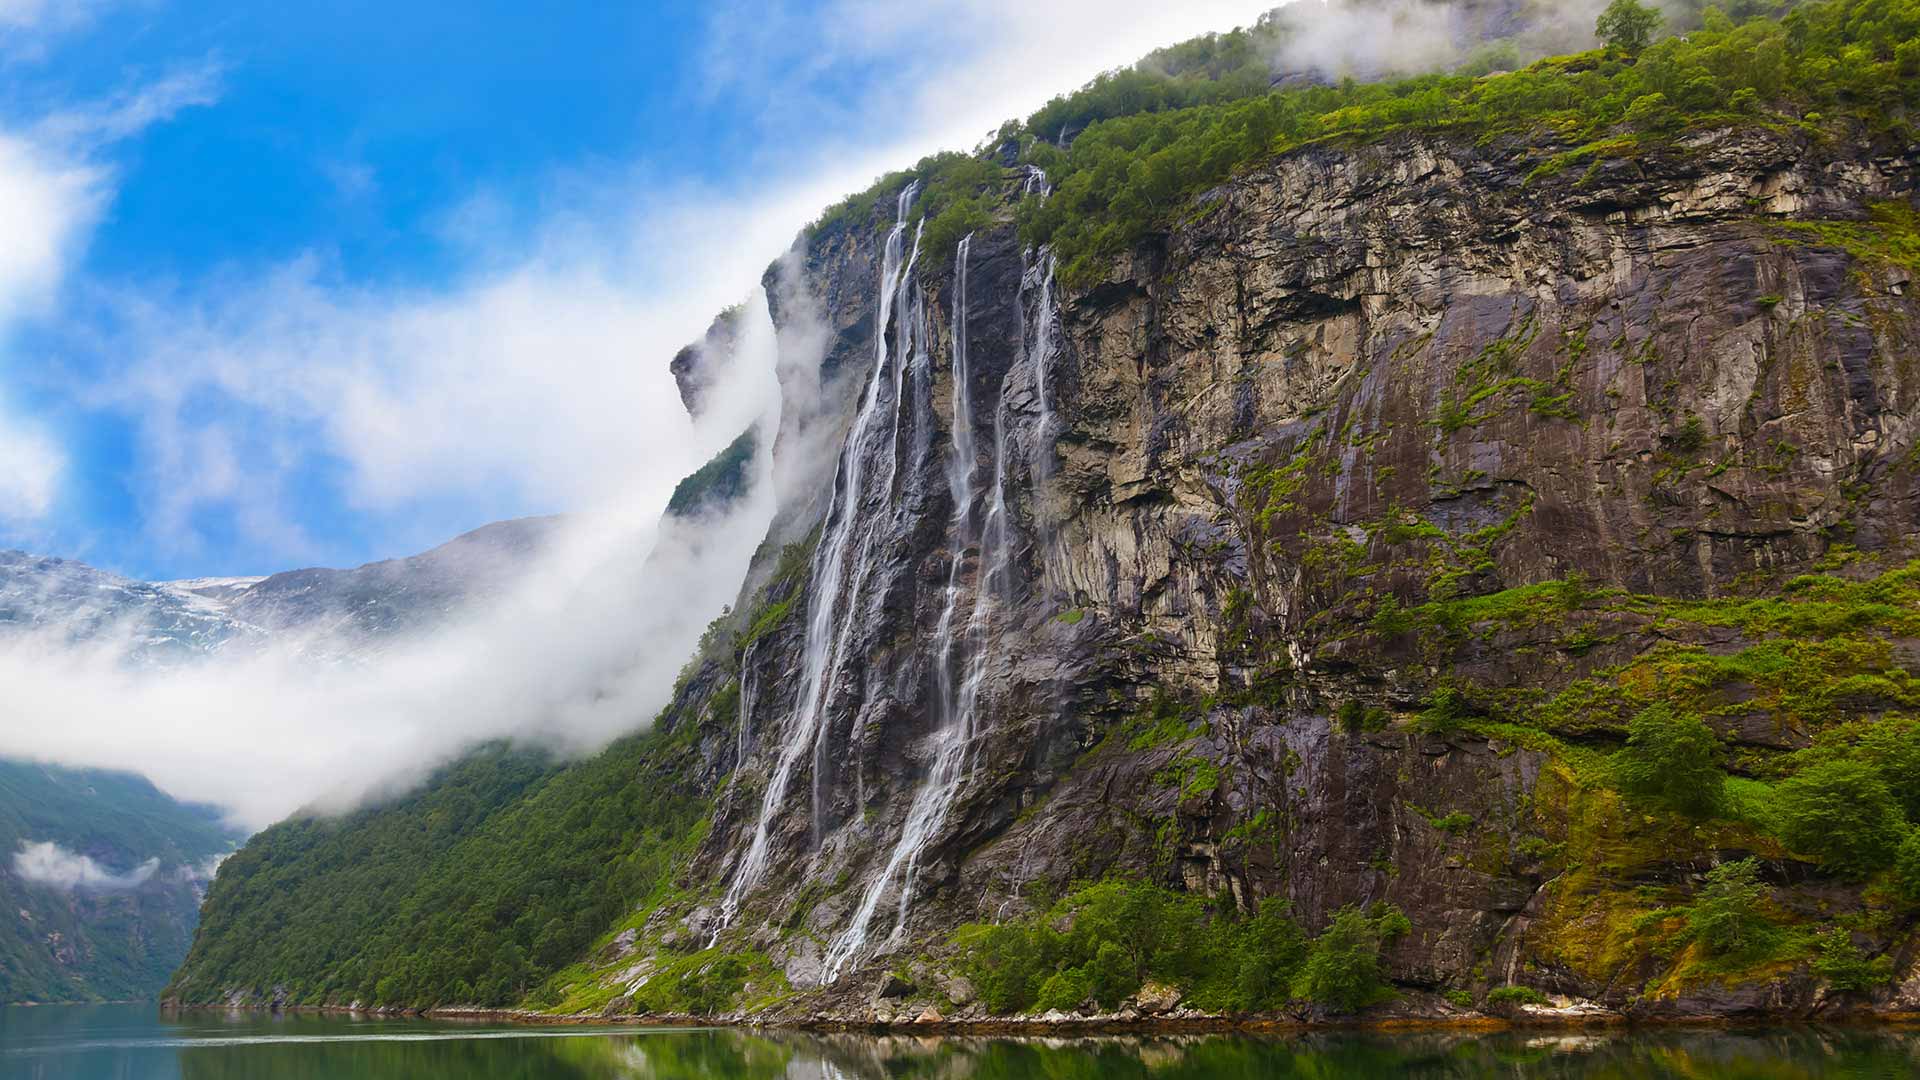 Geirangerfjord in Norway